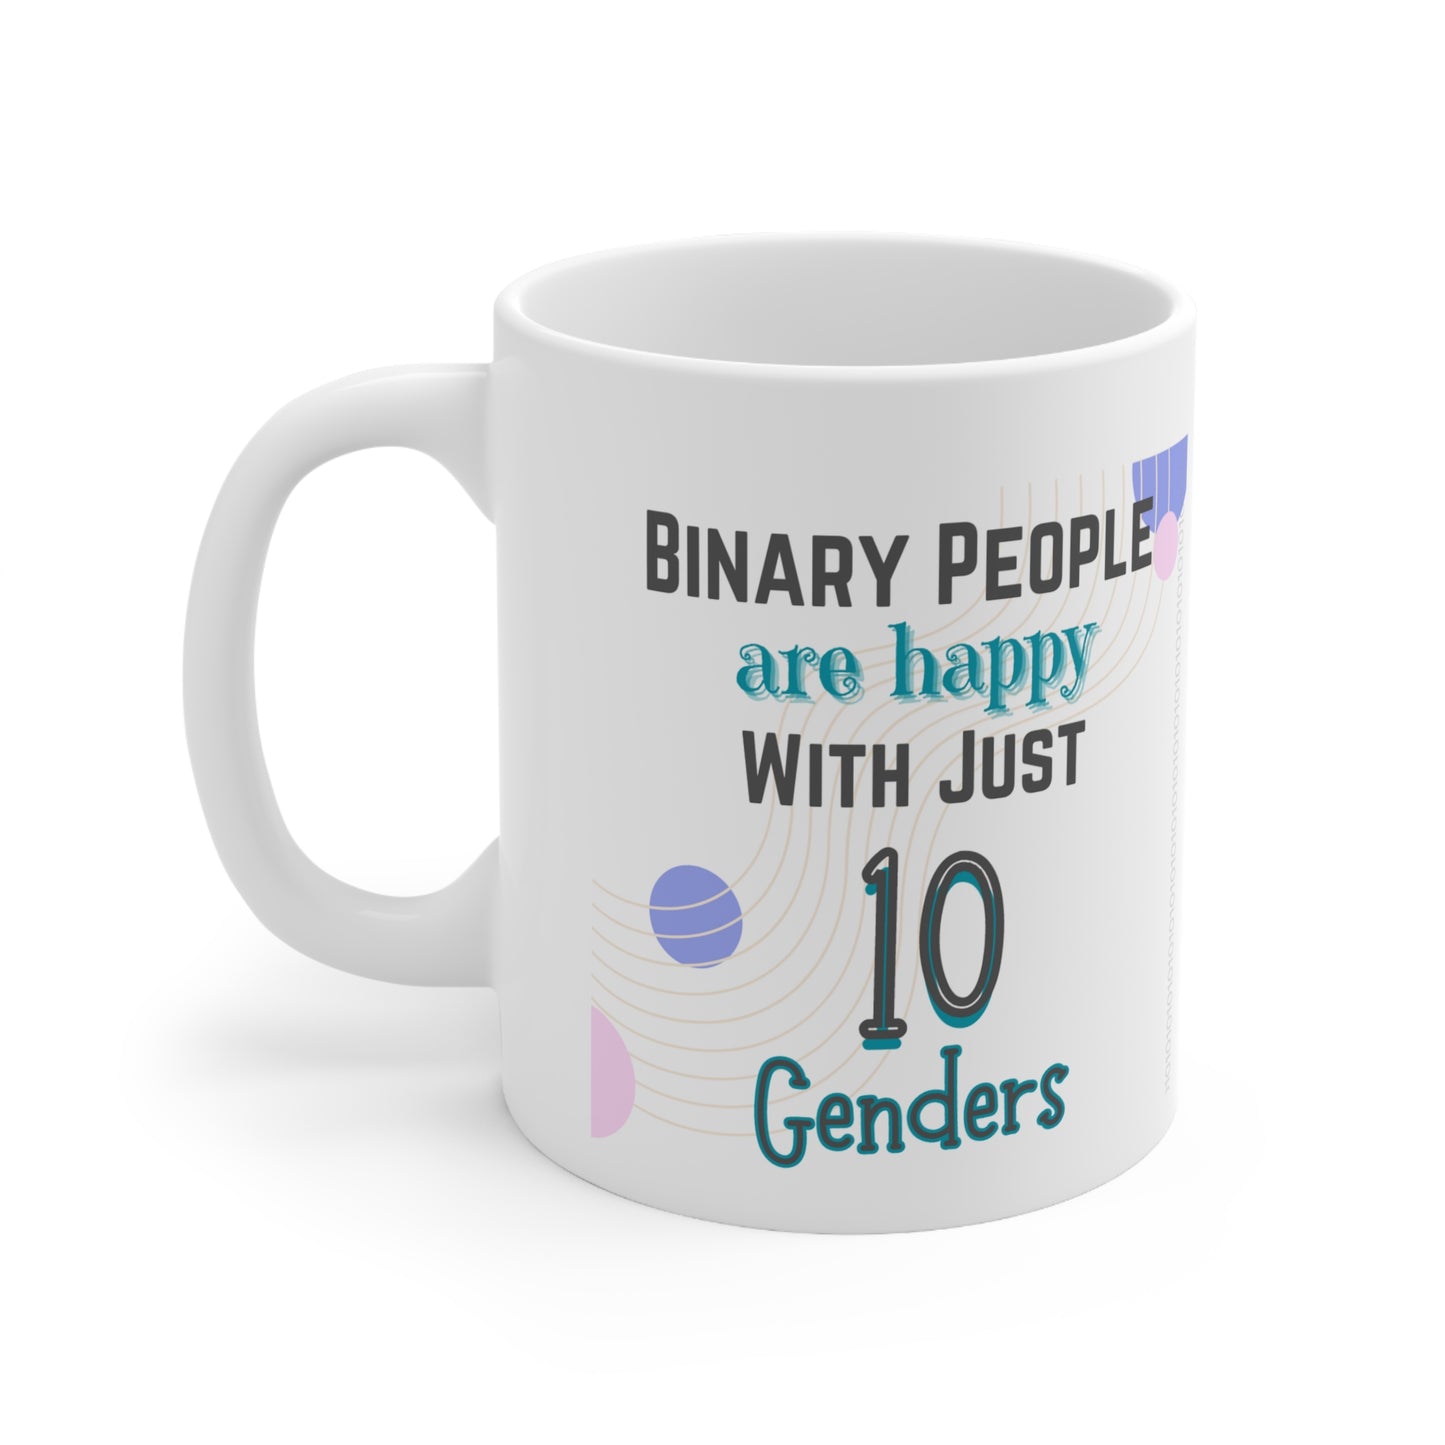 10 Genders Ceramic Mug 11oz